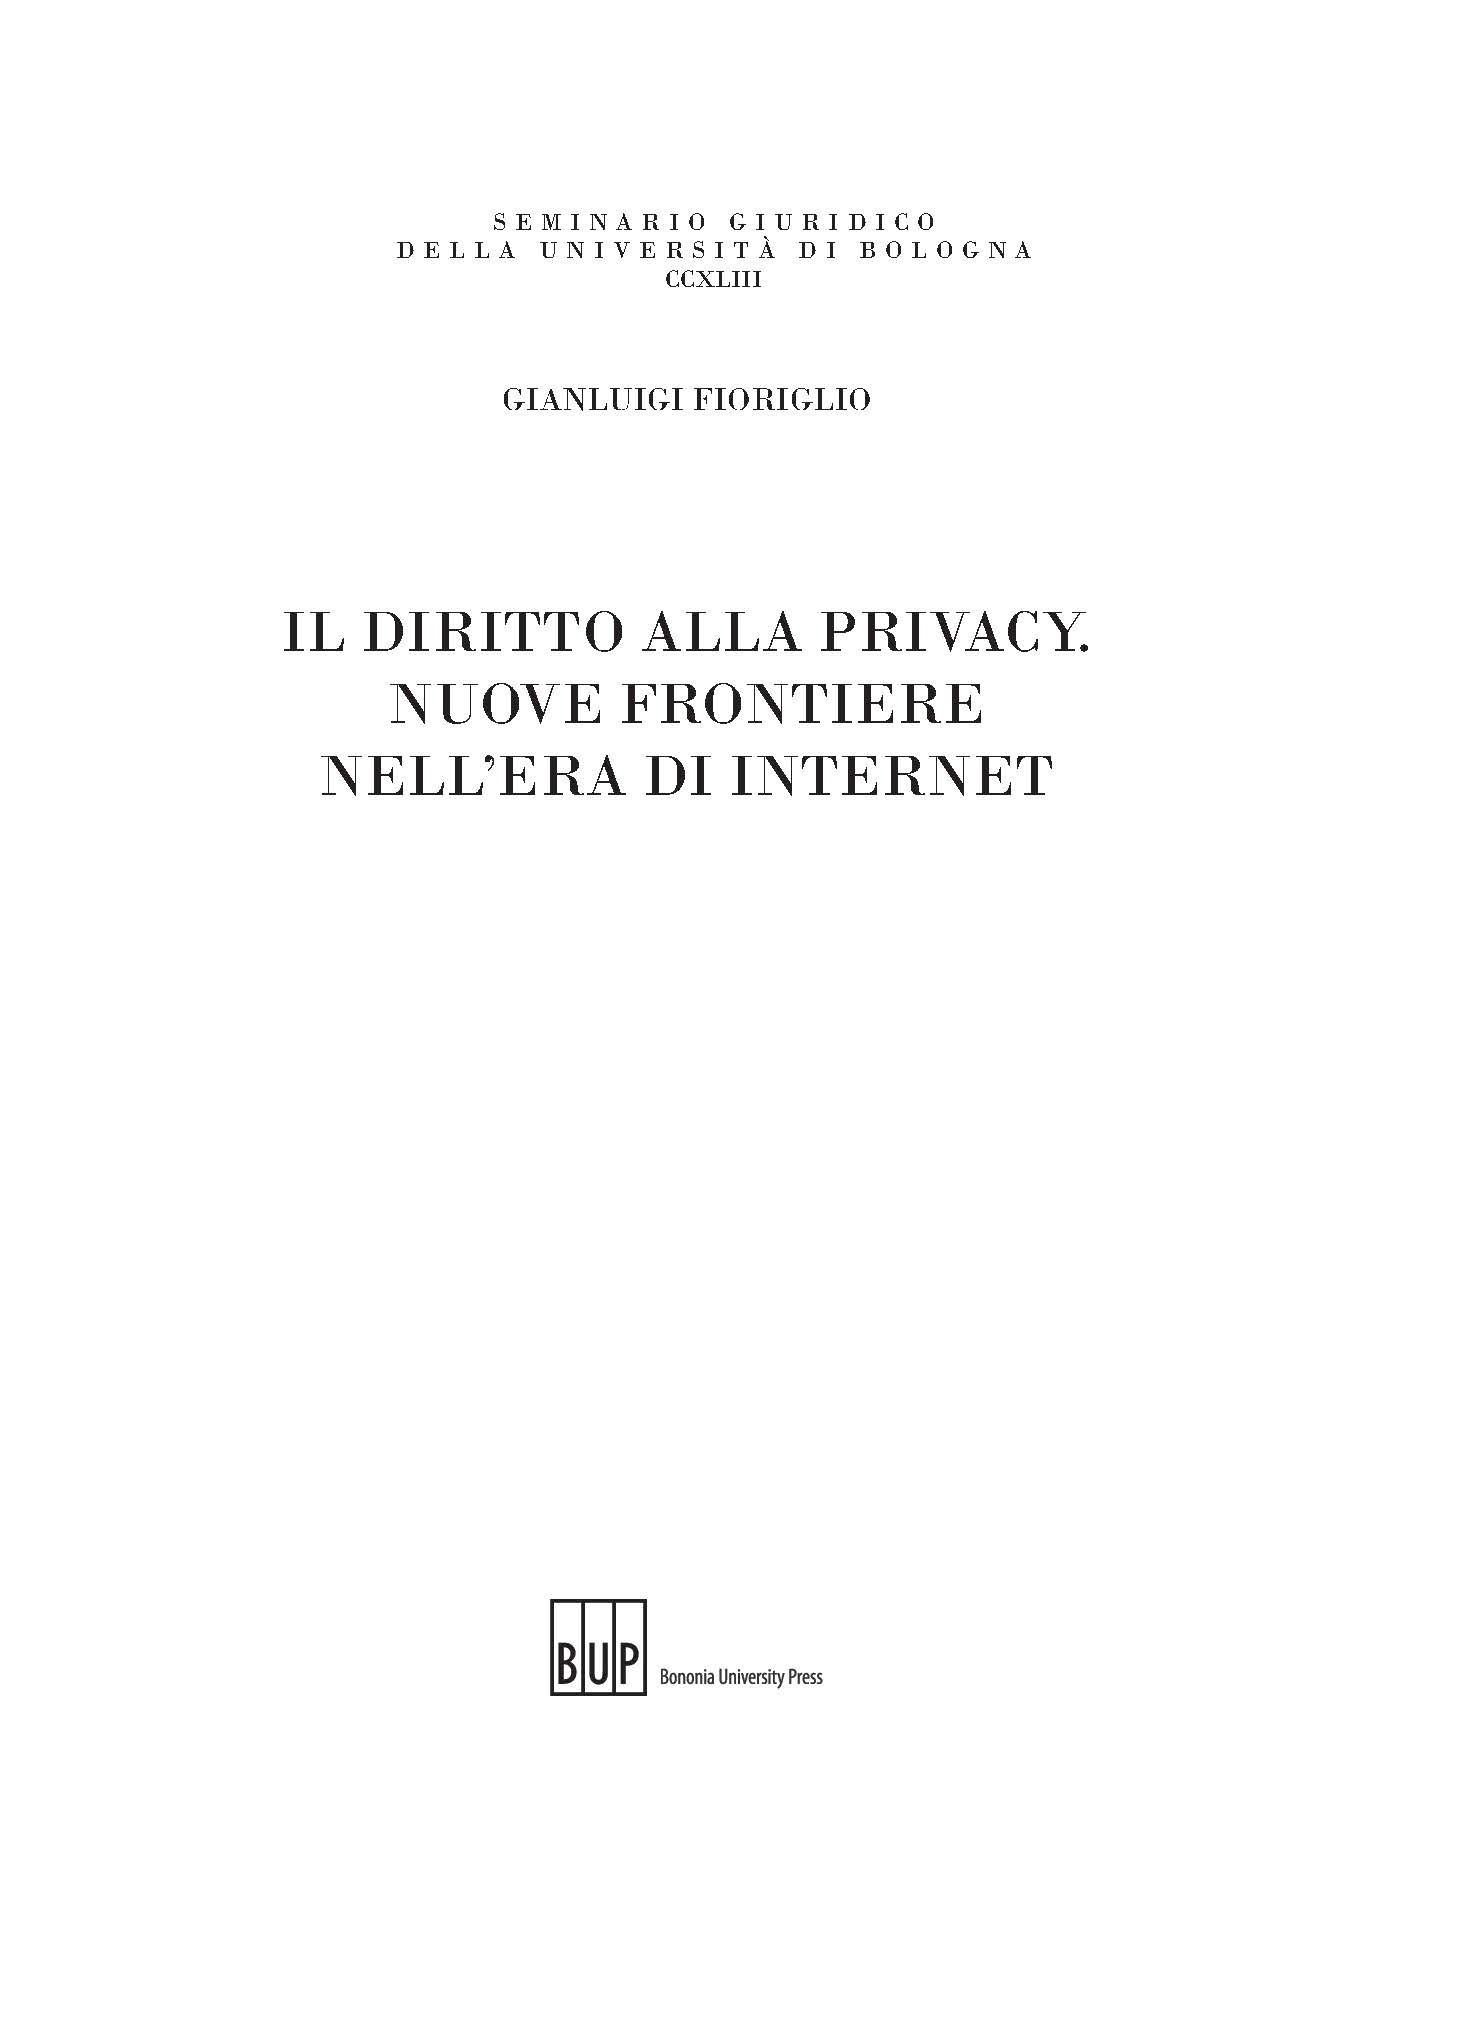 Il diritto alla privacy - Bologna University Press